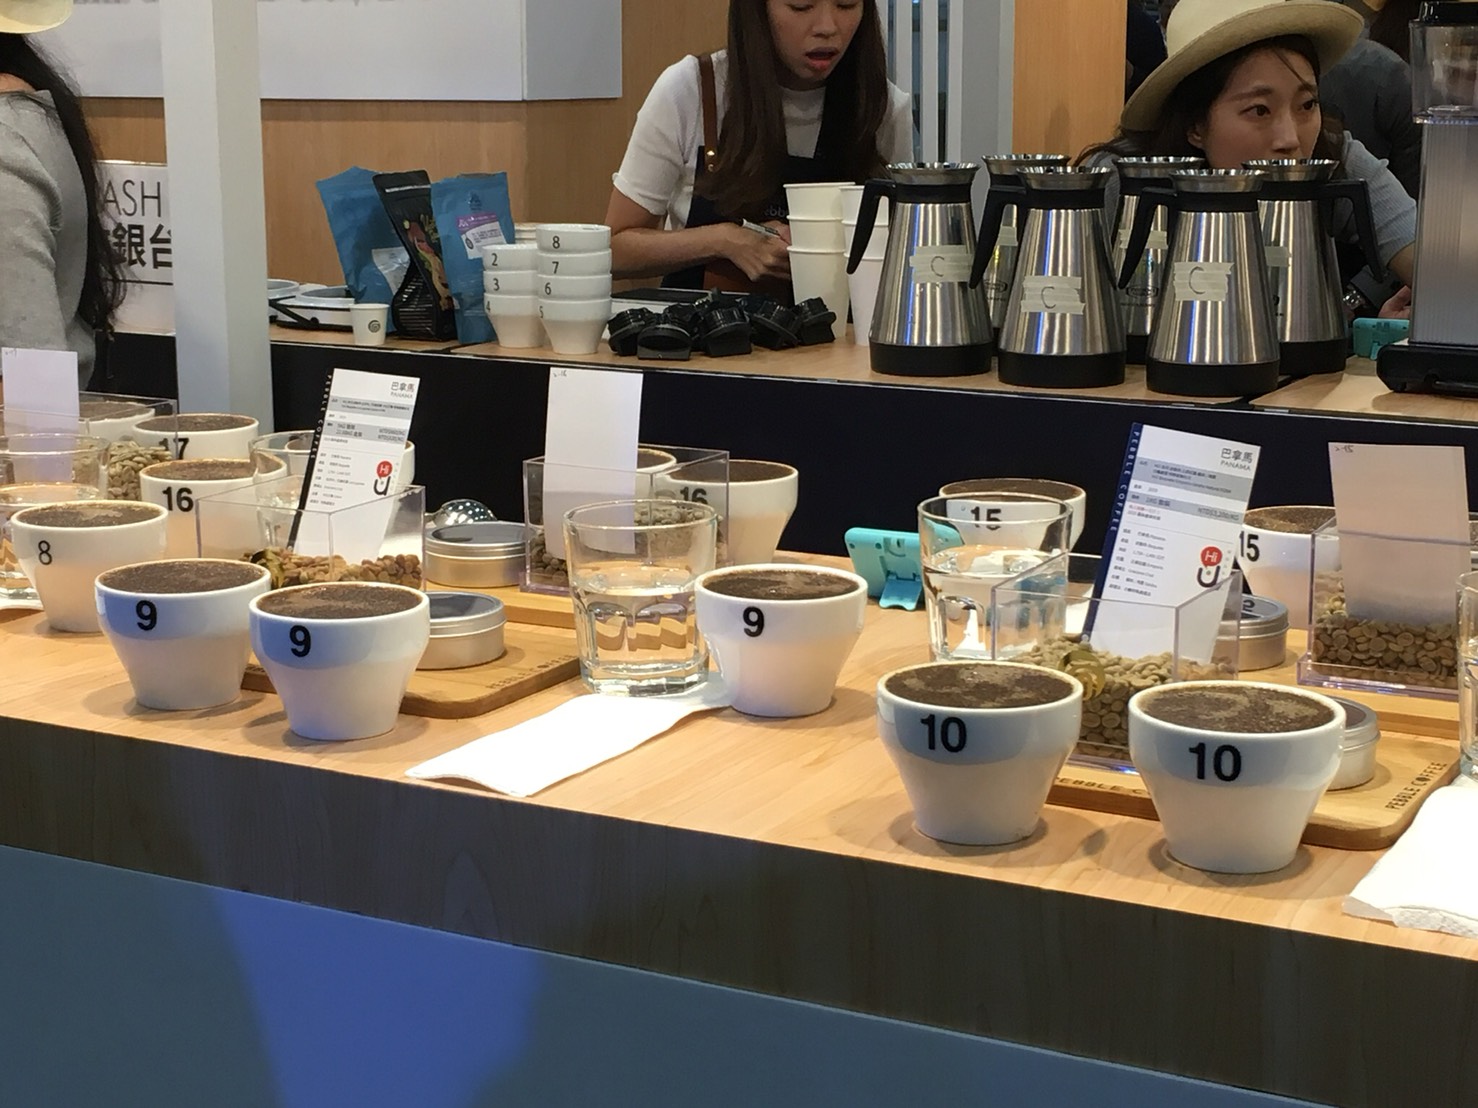 2019 咖啡展 咖啡杯測 聞香 溼香氣 體驗 咖啡豆比賽 咖啡豆比評